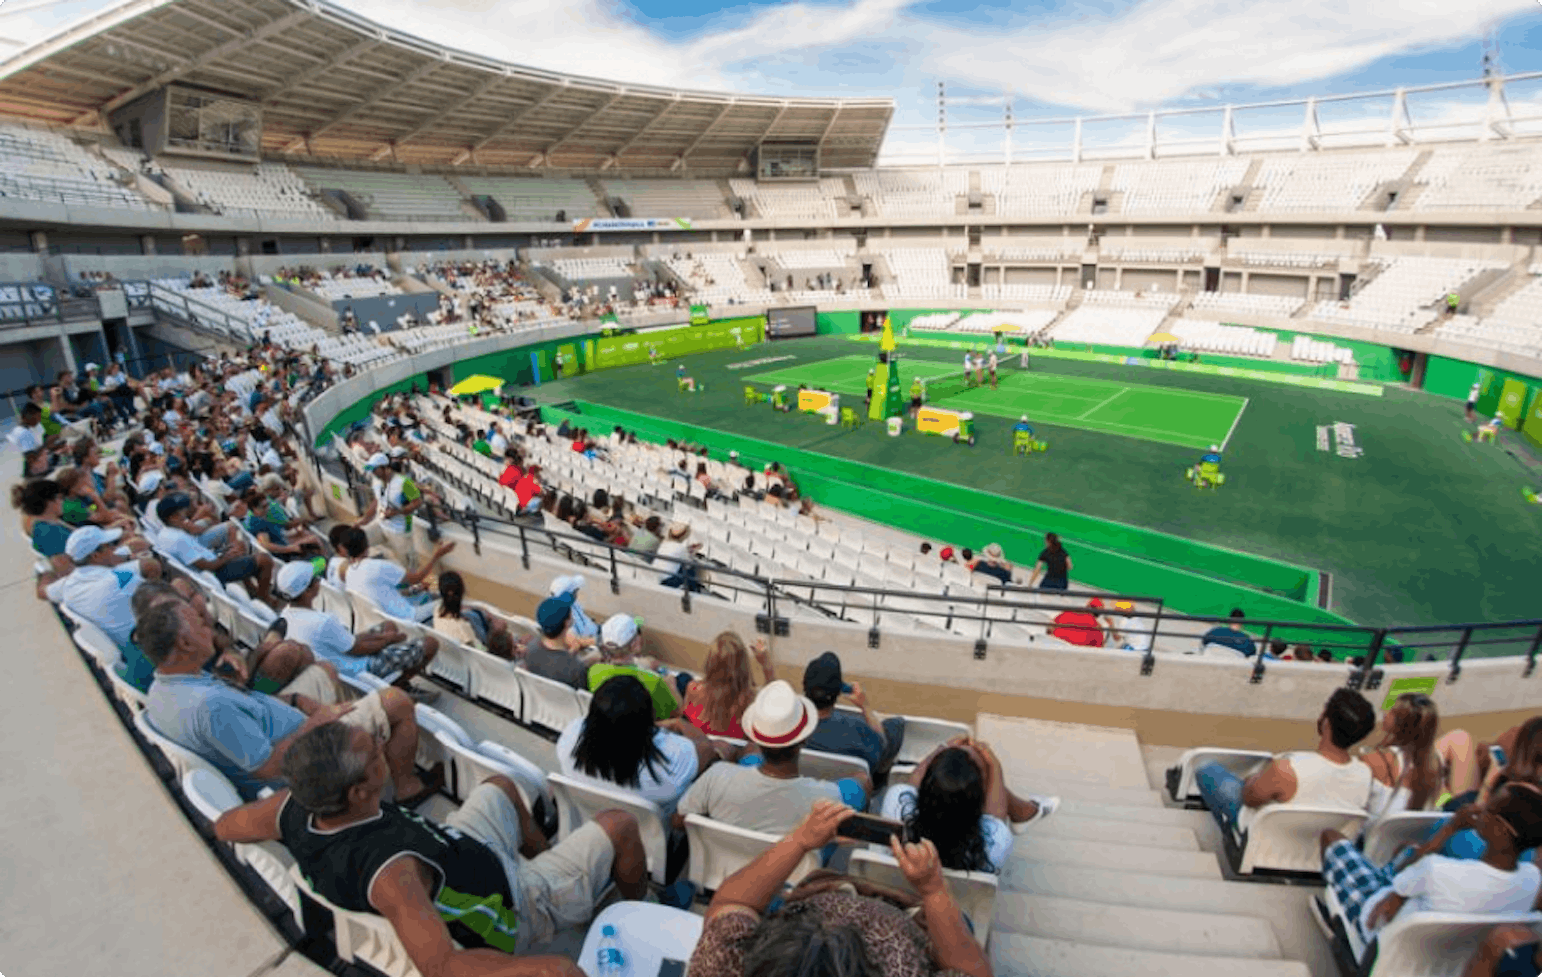 Олимпийский теннисный центр Рио де Жанейро. Рио Олимпик центр теннис. Теннисный стадион Рио де Жанейро 2016. Олимпийский зелёный теннисный центр.